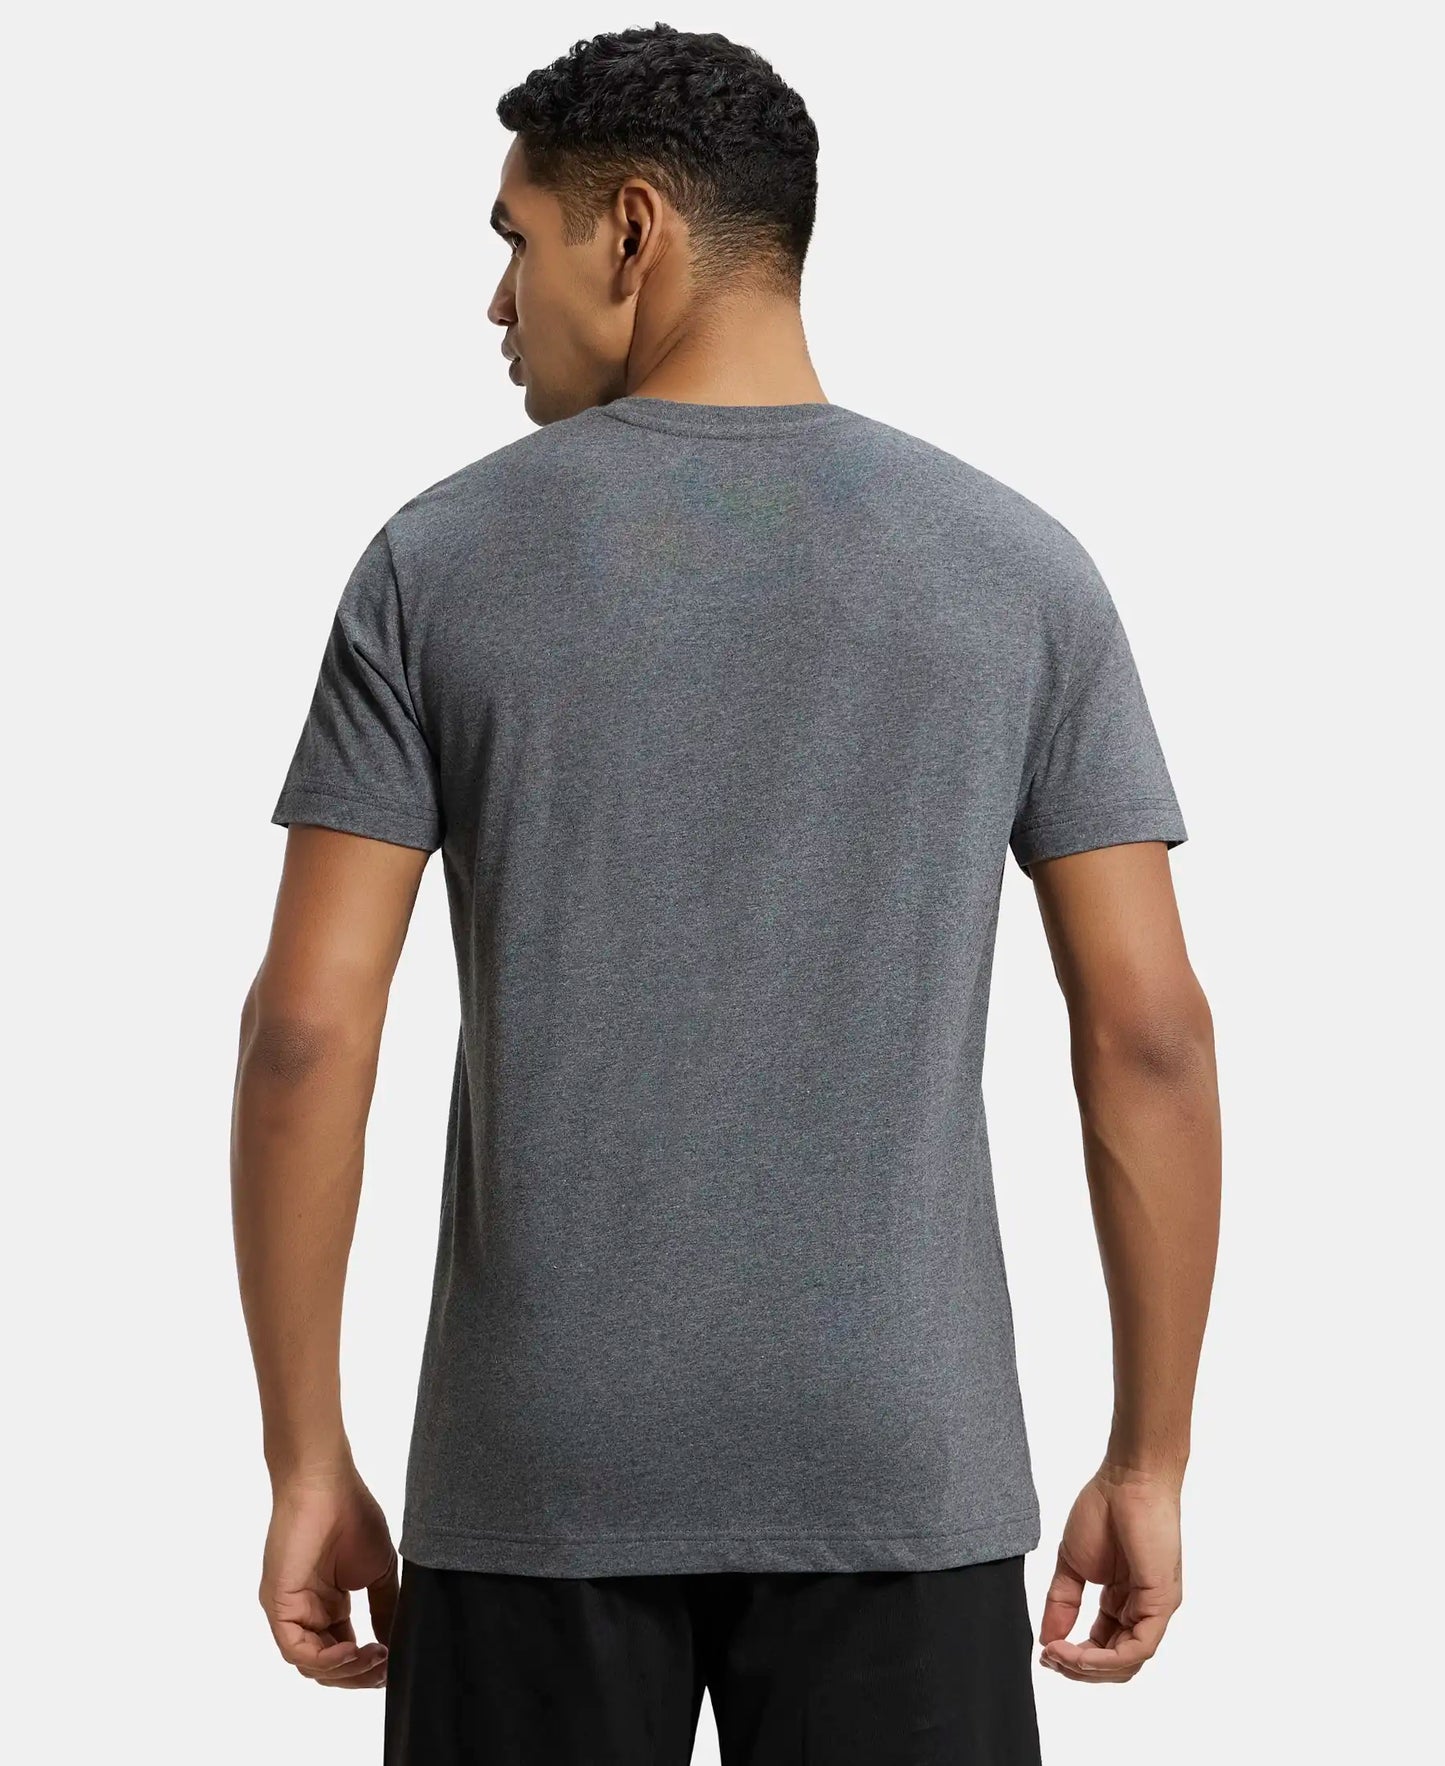 Super Combed Cotton Rich Solid V Neck Half Sleeve T-Shirt  - Charcoal Melange-3